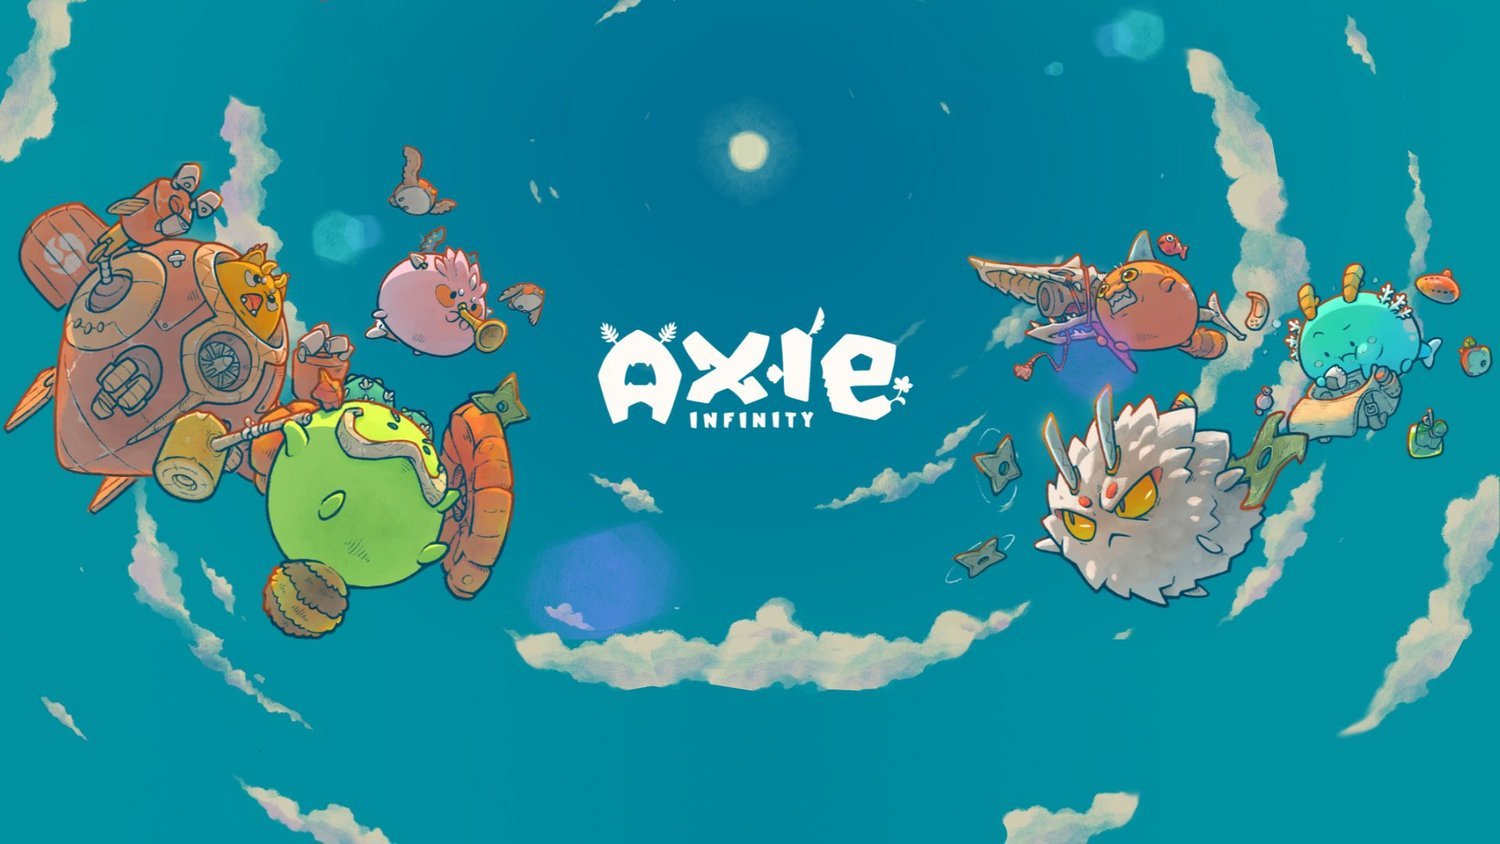 Axie